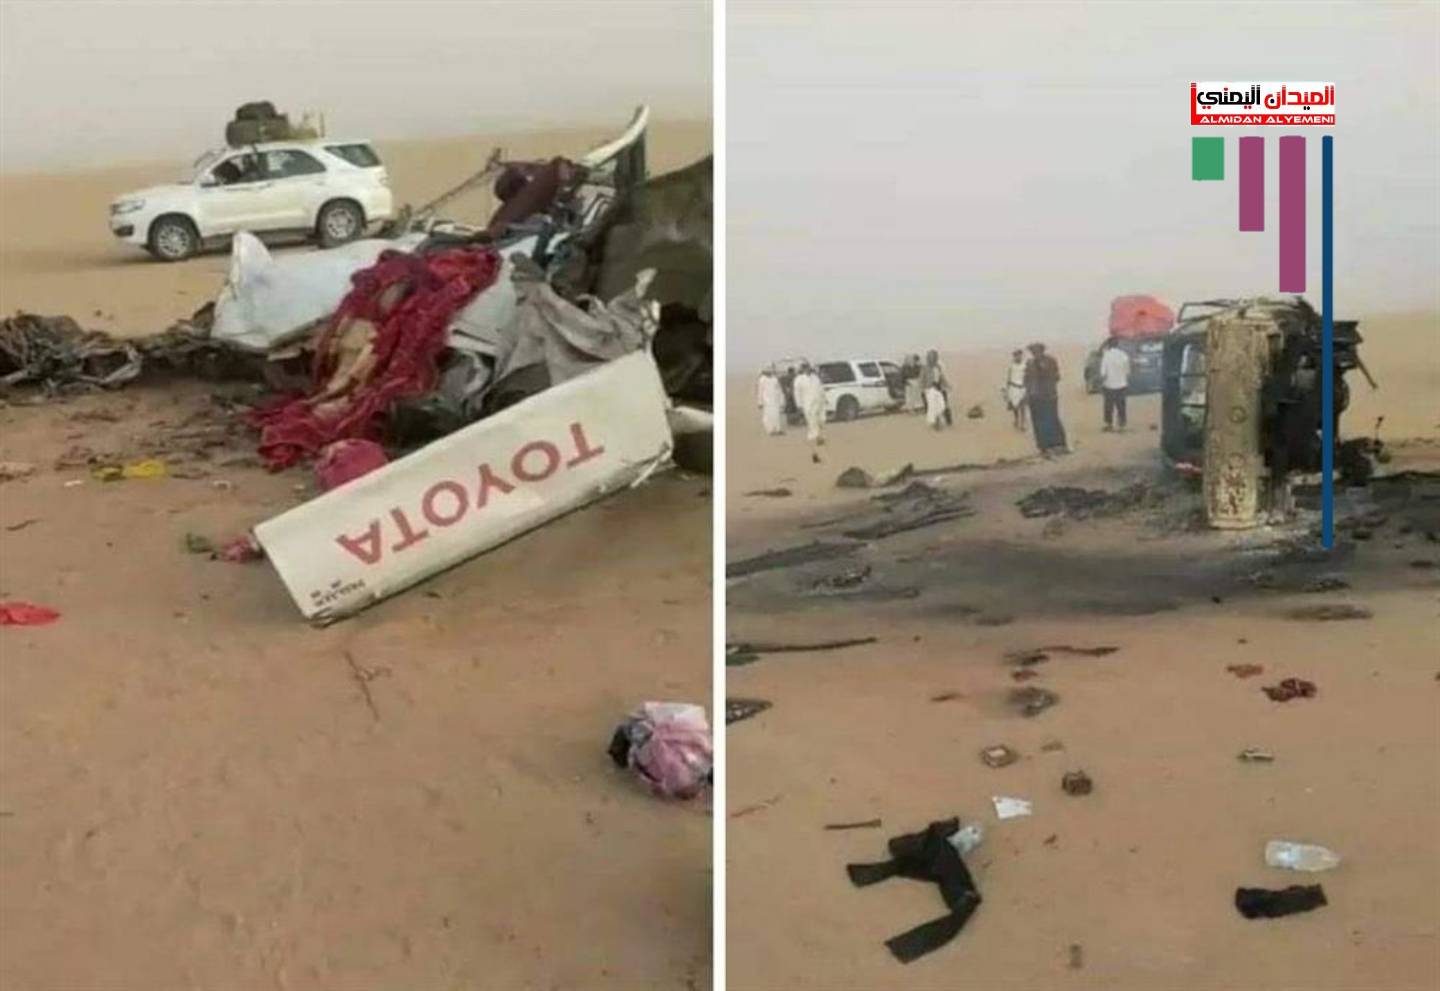 خلال عودتهم من السعودية.. وفاة 12 مسافرا بحادث مروع في صحراء الجوف